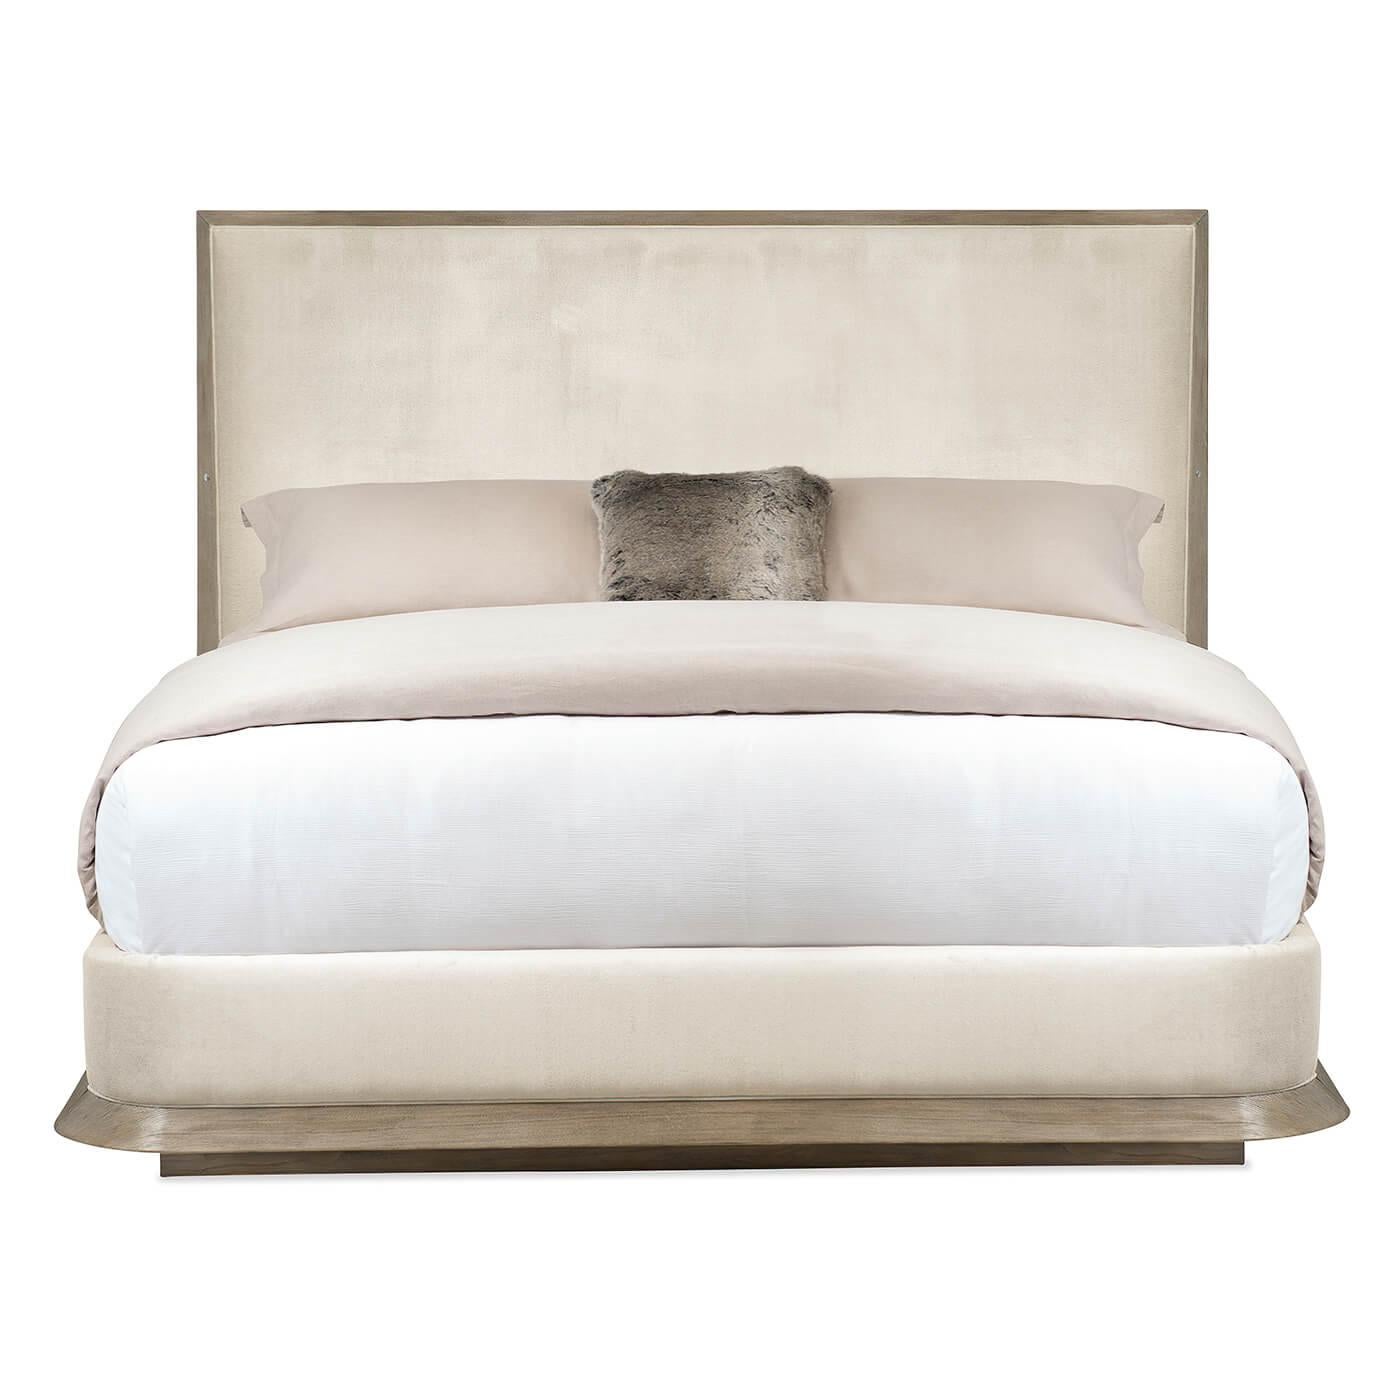 Ein modernes Eschengestell-Königsbett mit einem hohen gepolsterten Kopfteil. Der atemberaubende neutrale Stoff in Kombination mit dem Ash Driftwood verleiht diesem Bett das Aussehen und das Gefühl von echtem Luxus. Dieses elegante Bett hat ein